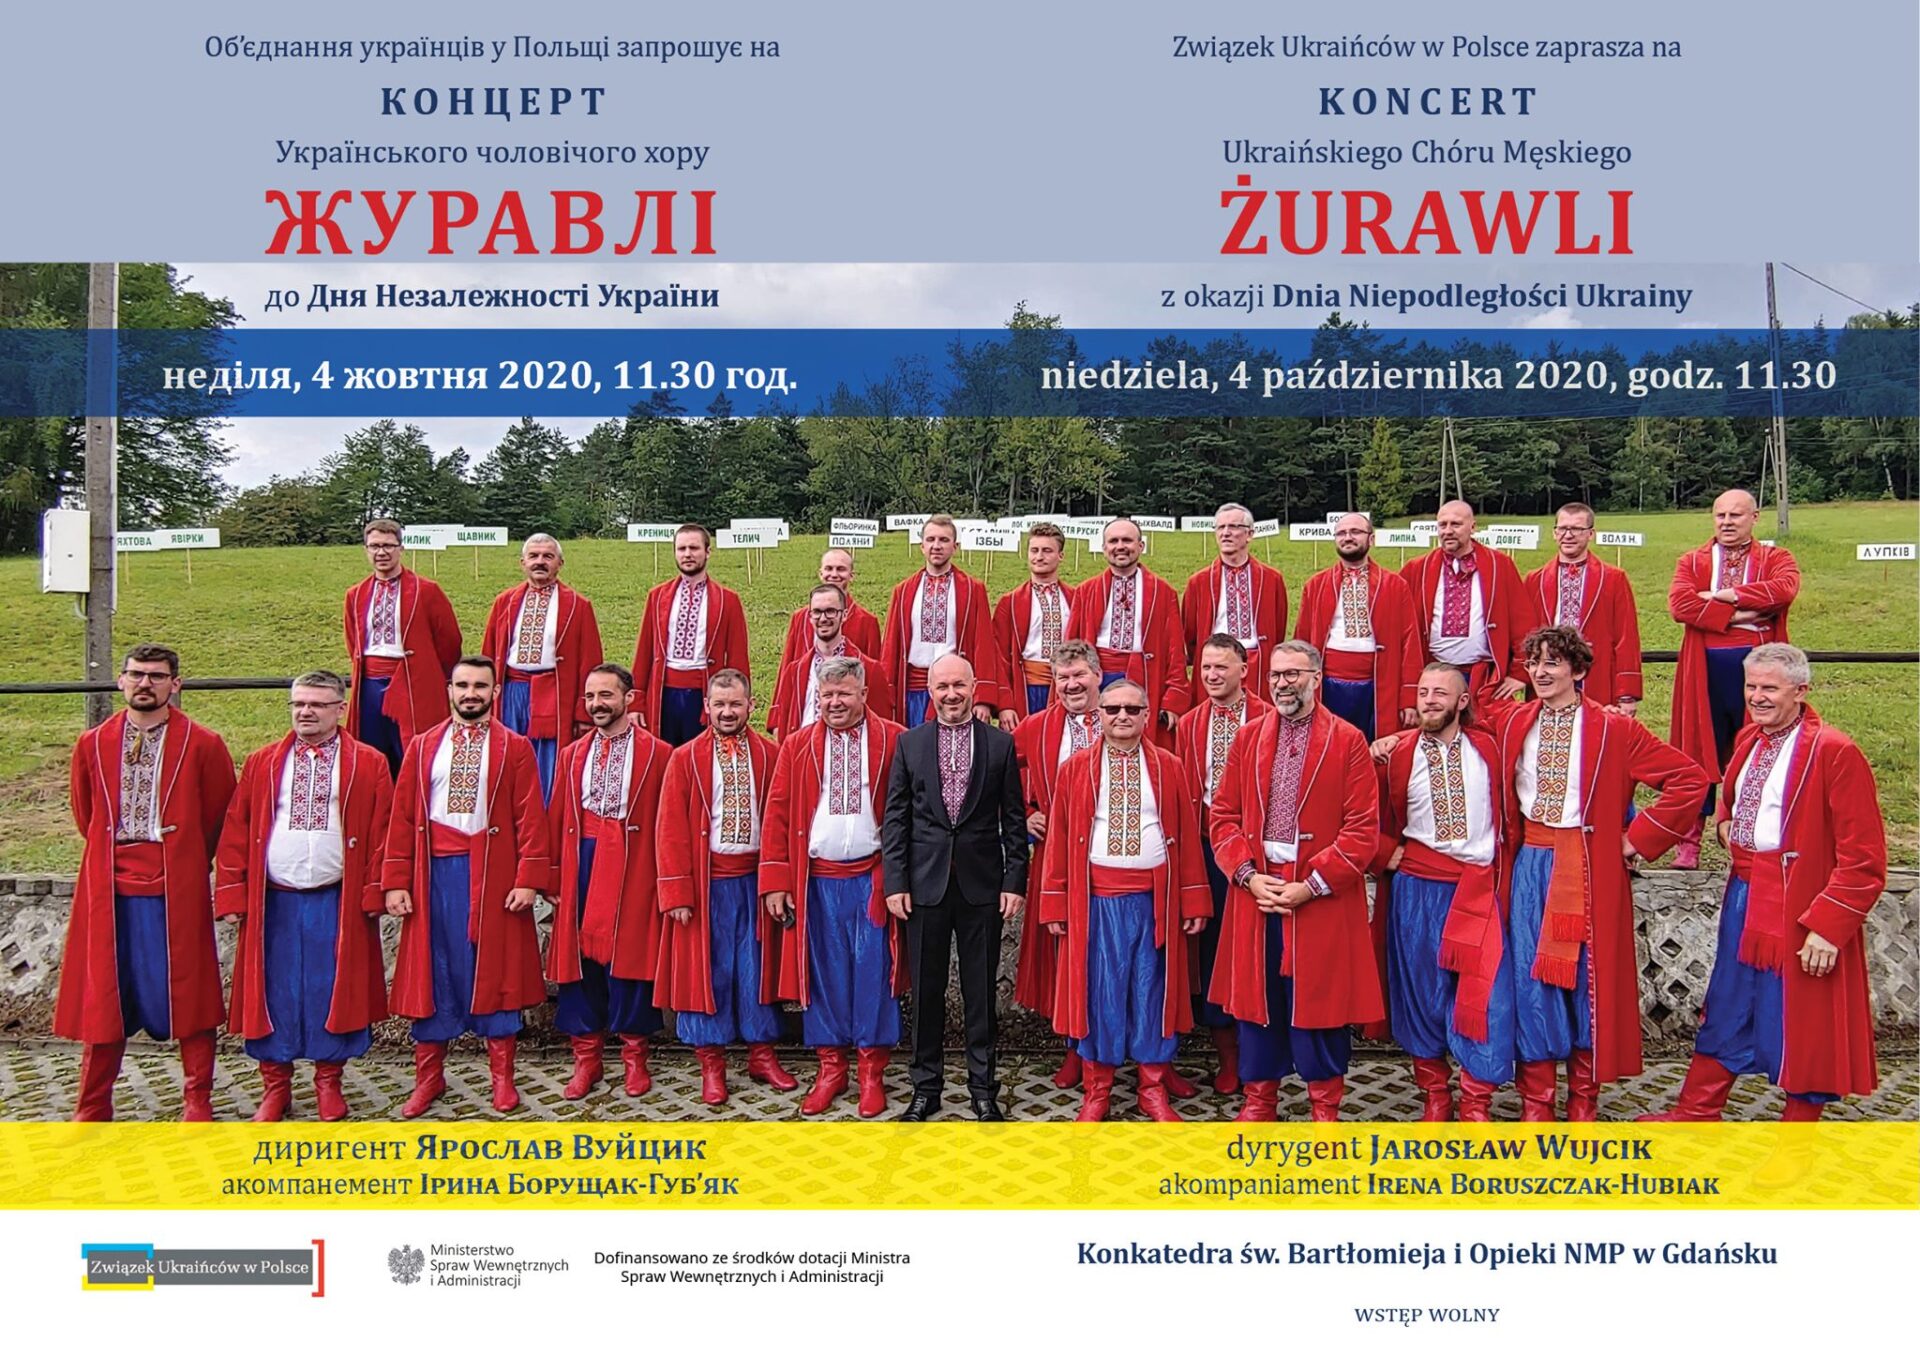 Концерт хору «Журавлів» у конкатедральному соборі у Ґданську